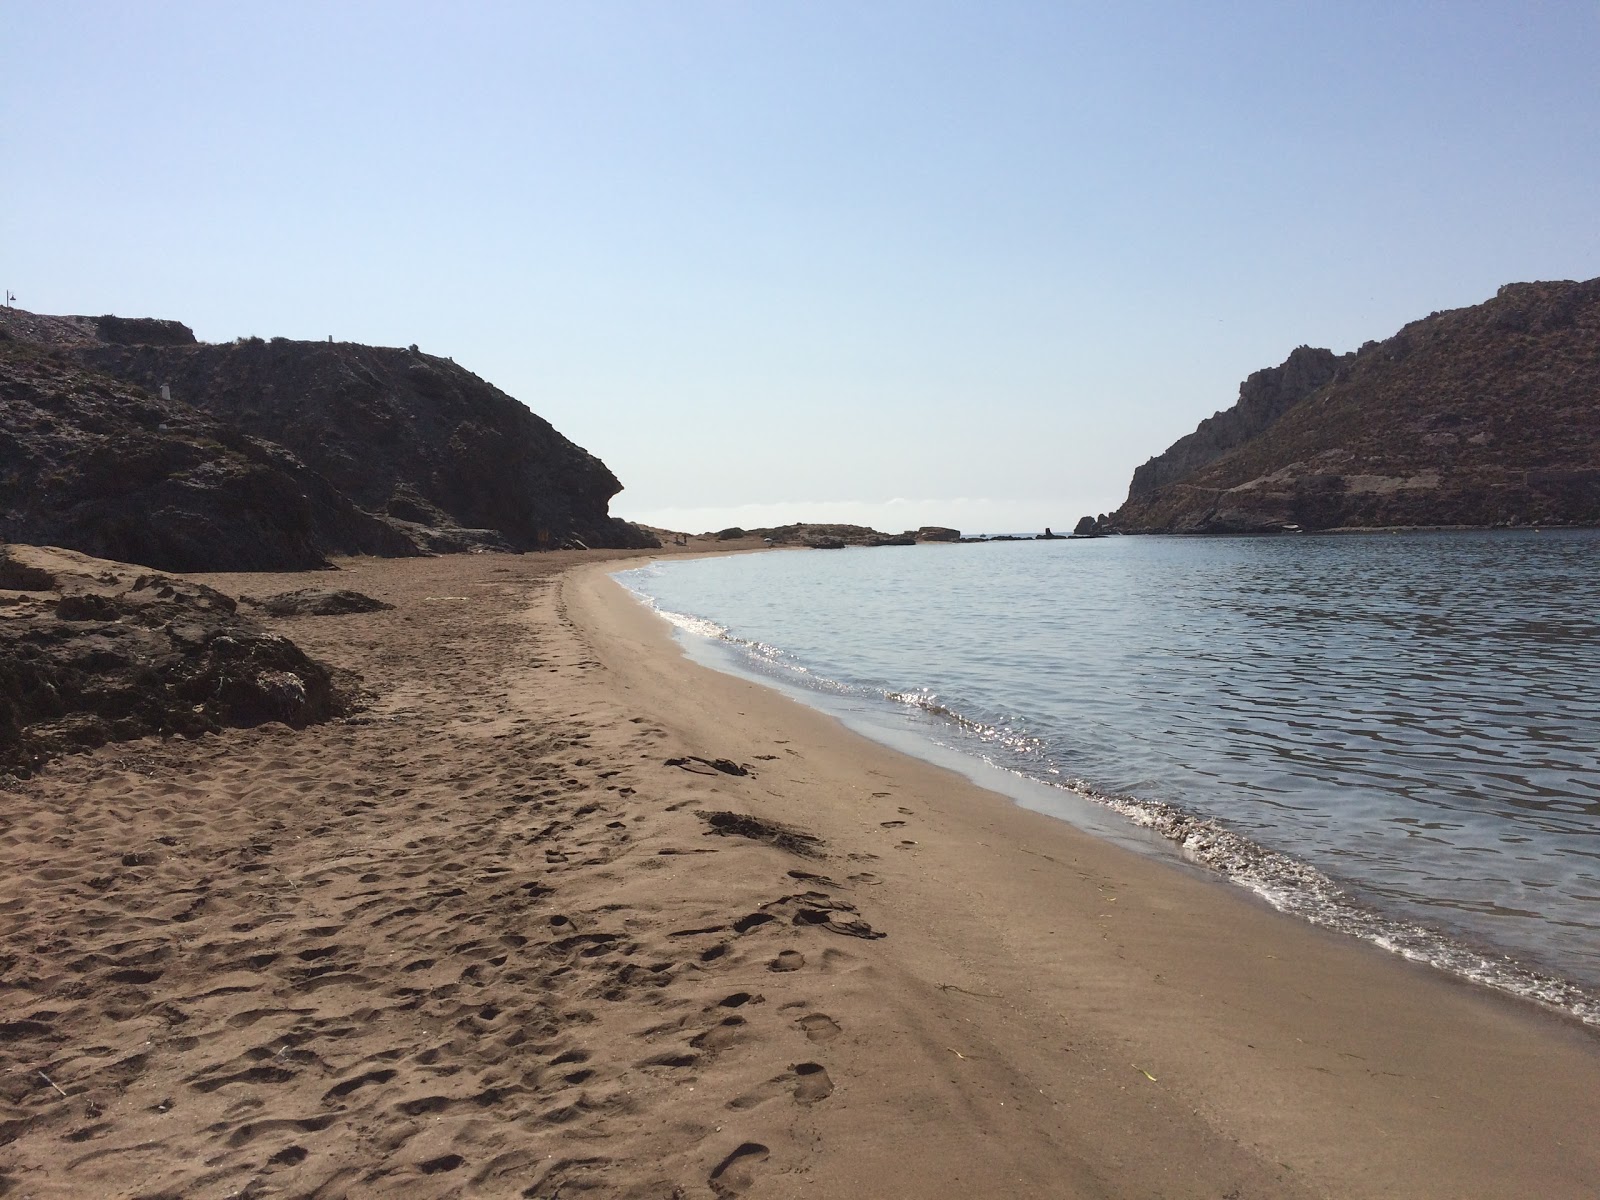 Foto af Playa de las Delicias - populært sted blandt afslapningskendere